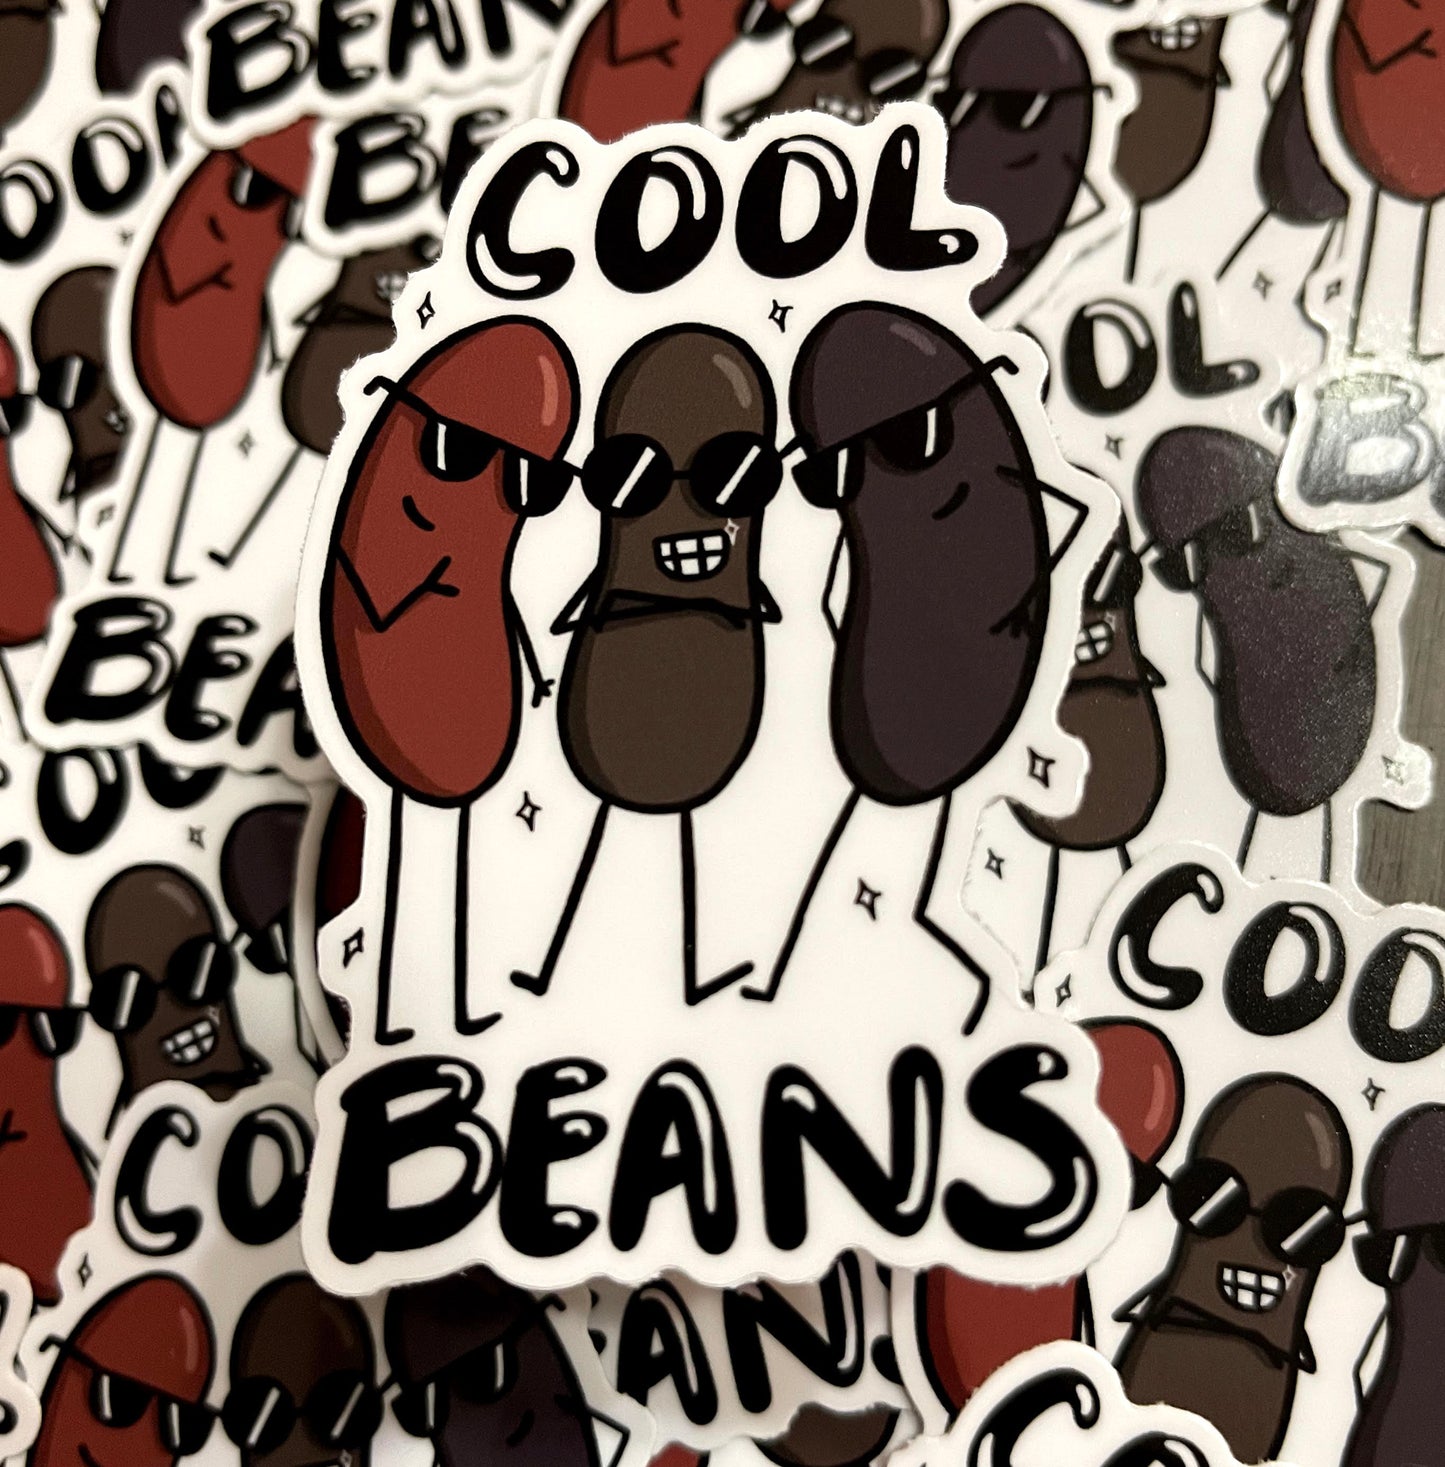 Cool Beans Vinyl Sticker